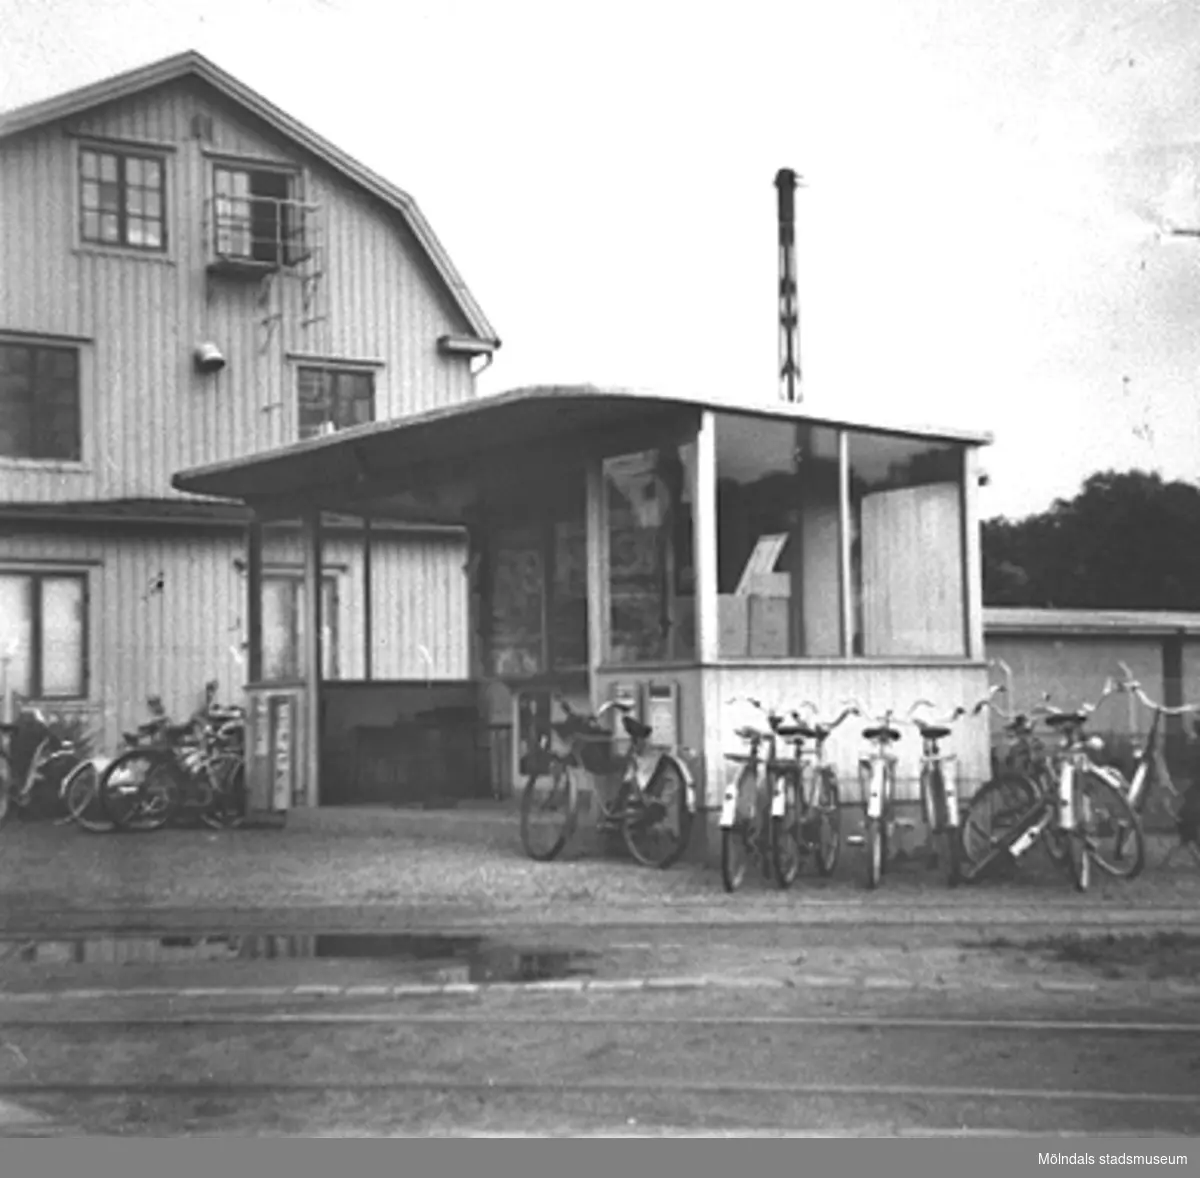 Vändslingan i Mölndals bro, 1940-talet. Parkerade cyklar står uppställda vid busskuren.